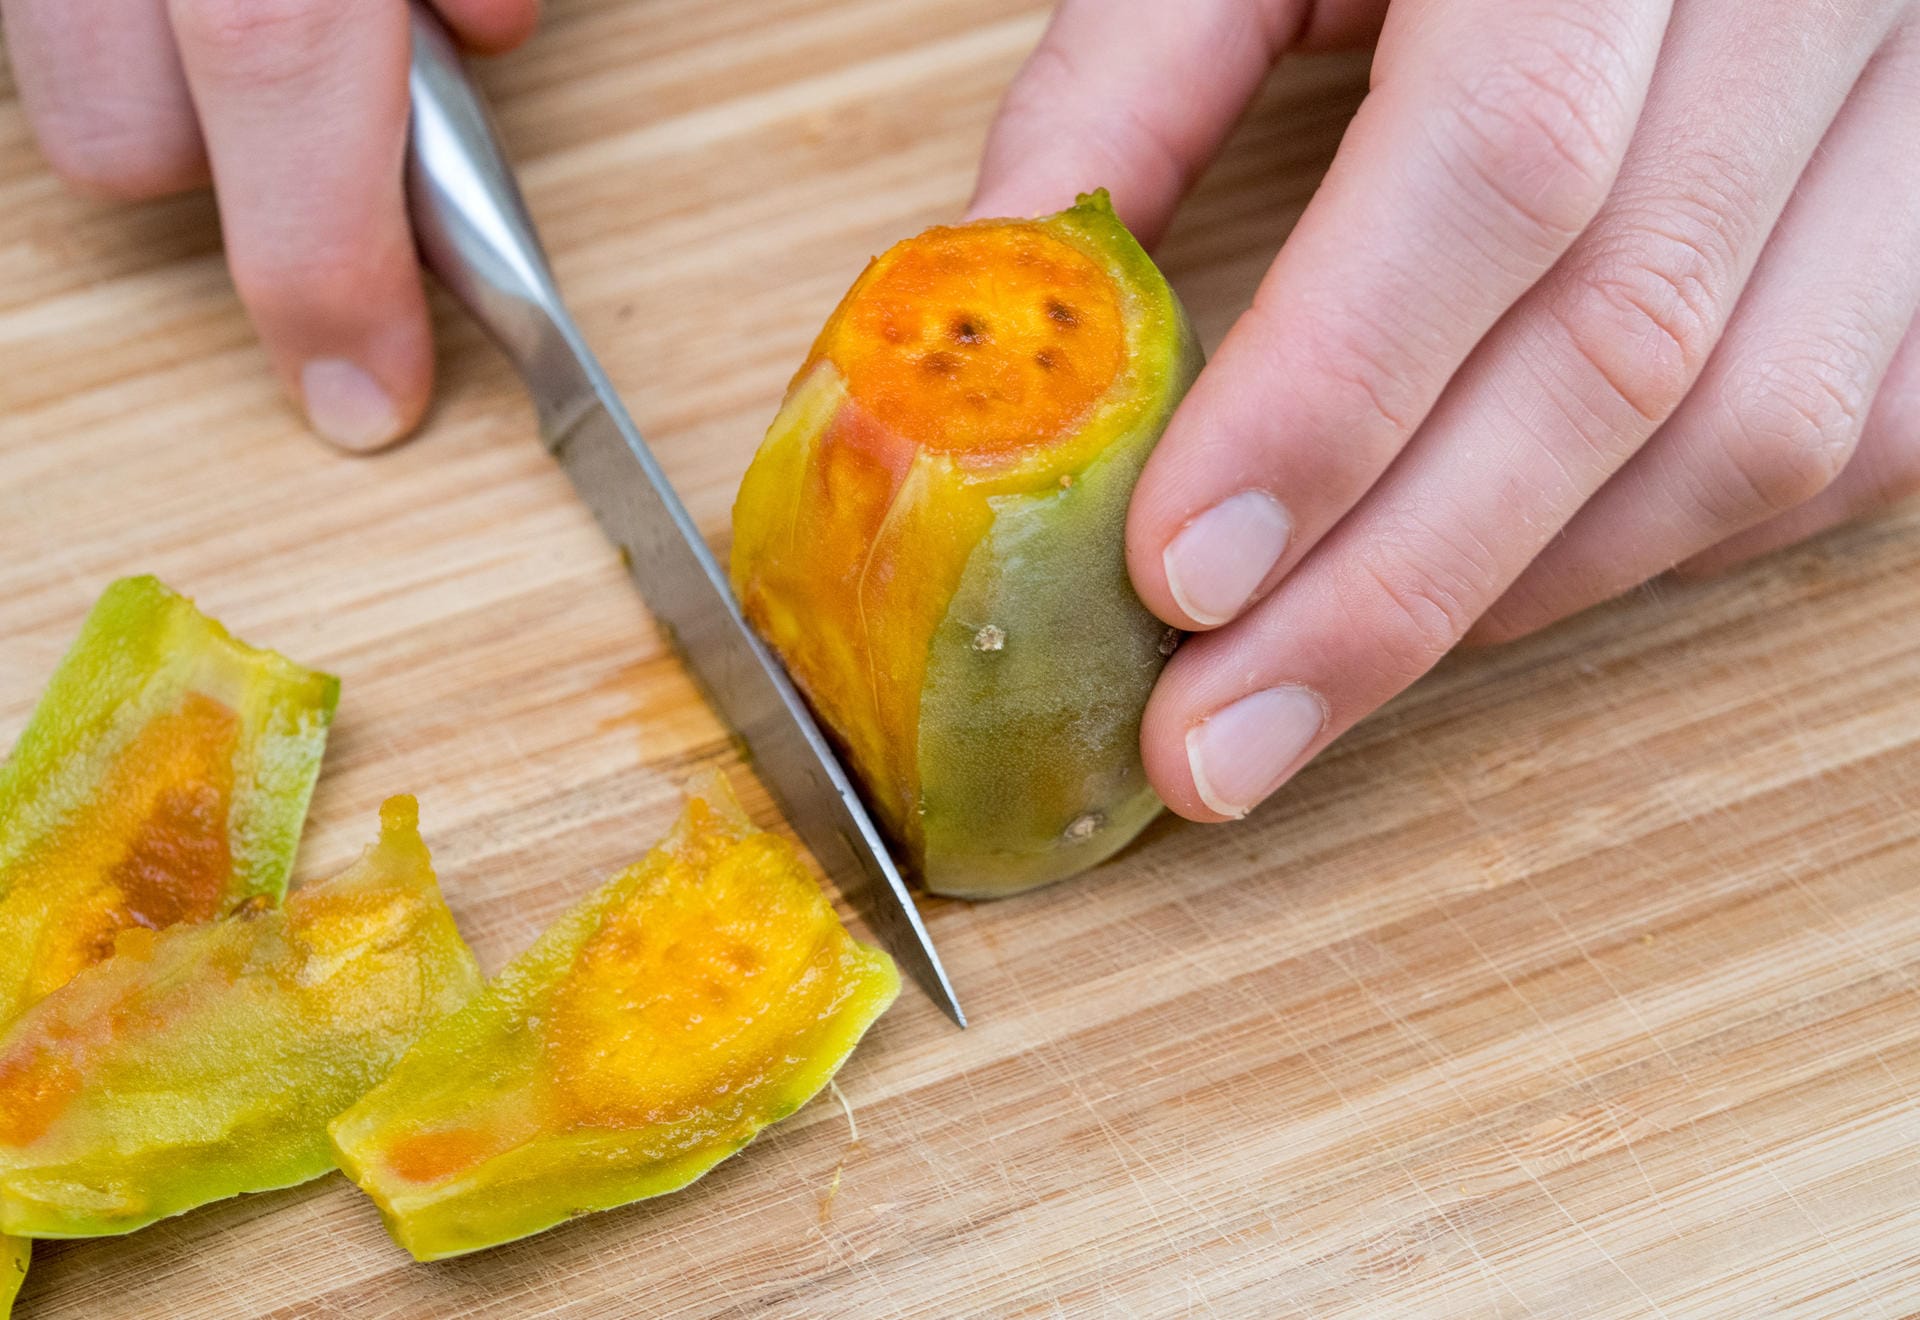 4. Die Frucht aufrecht hinstellen und mit einem Messer rundherum die Schale abschneiden.